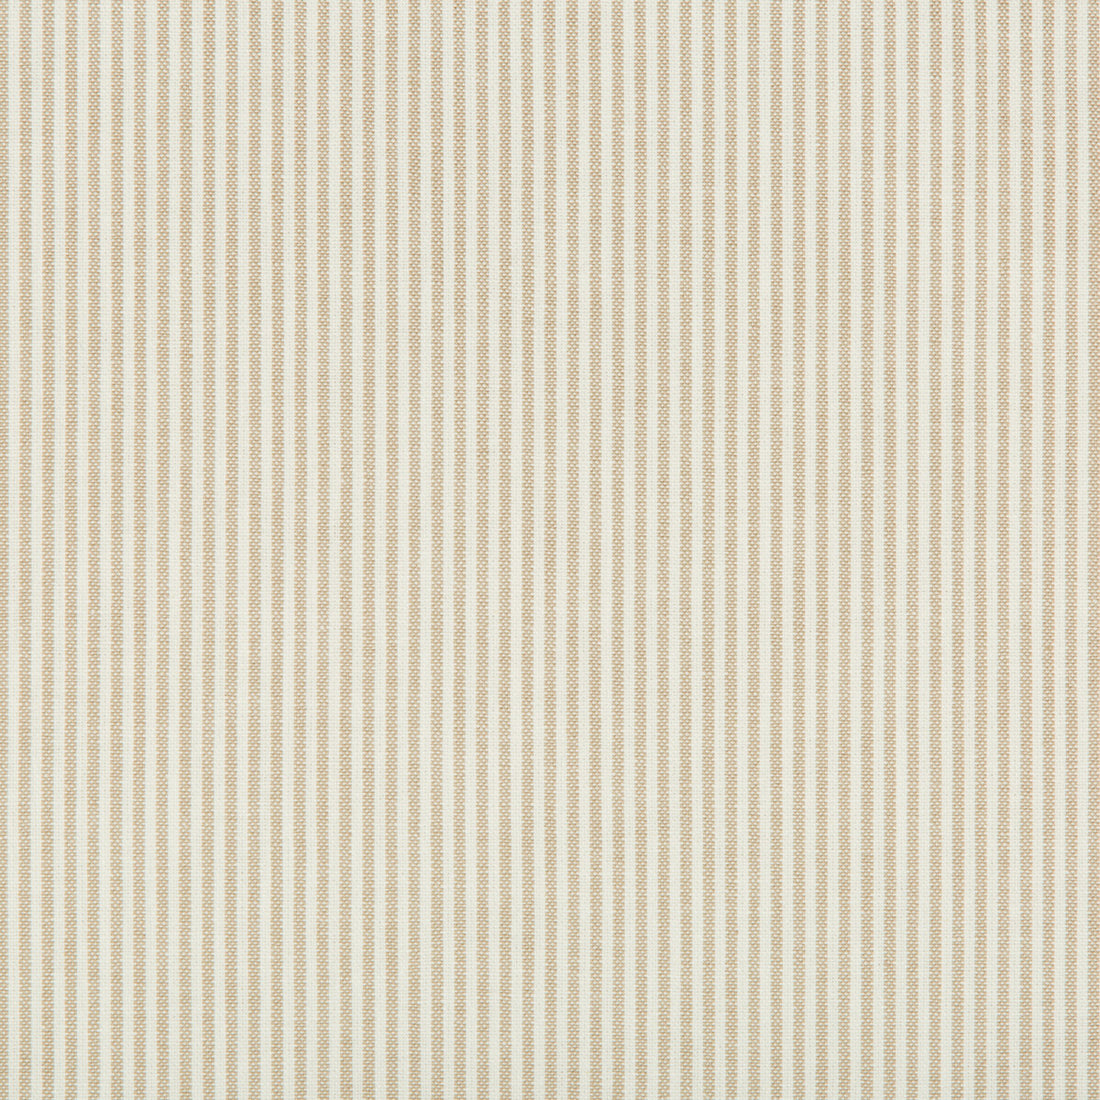 Kravet Basics fabric in 35199-116 color - pattern 35199.116.0 - by Kravet Basics